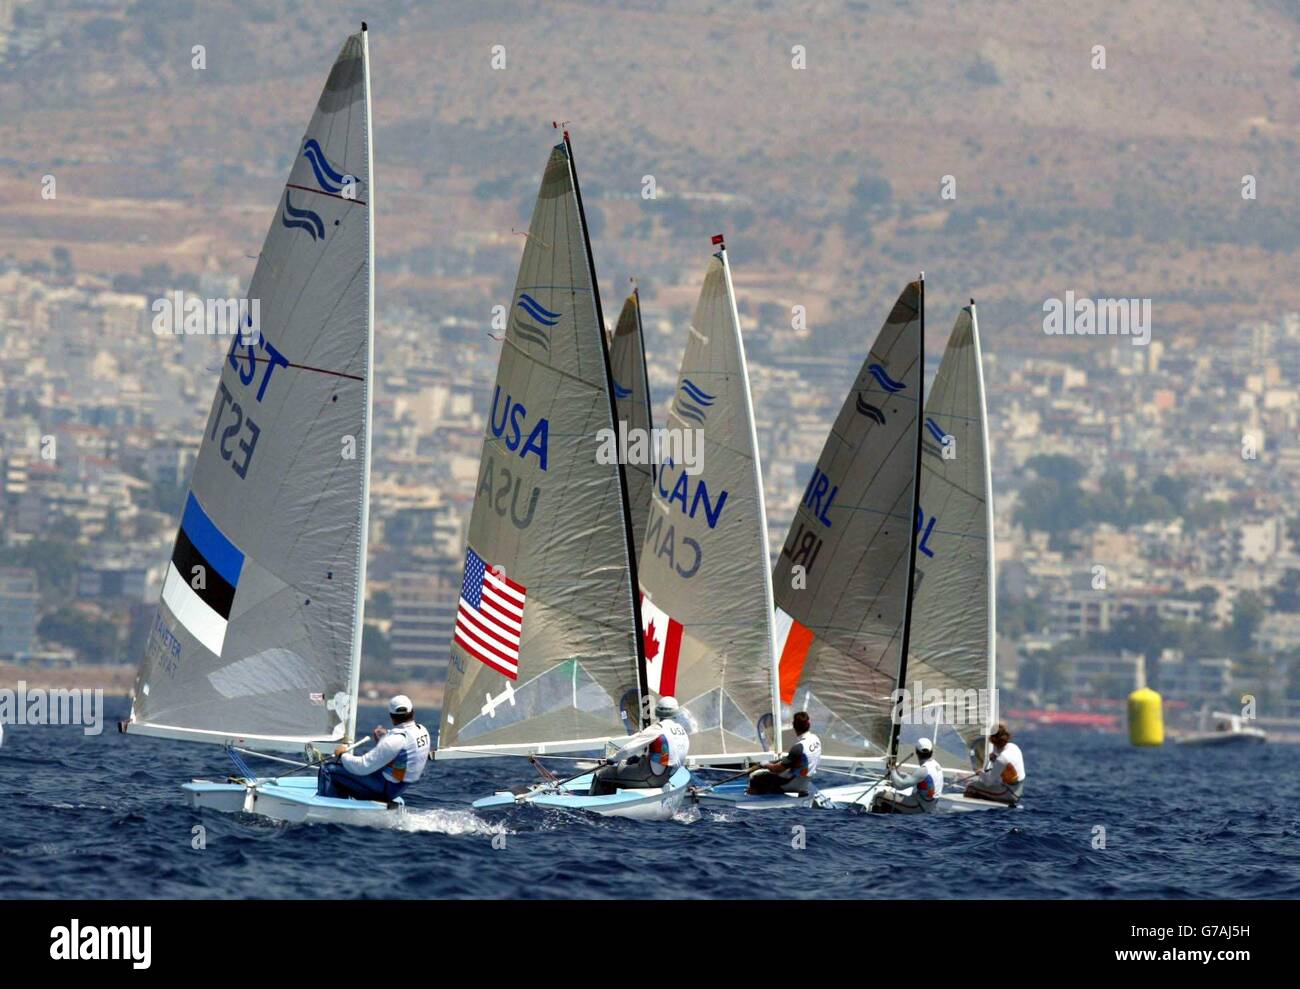 Marinai in classe fin in competizione al largo della costa di Atene durante le Olimpiadi. Foto Stock